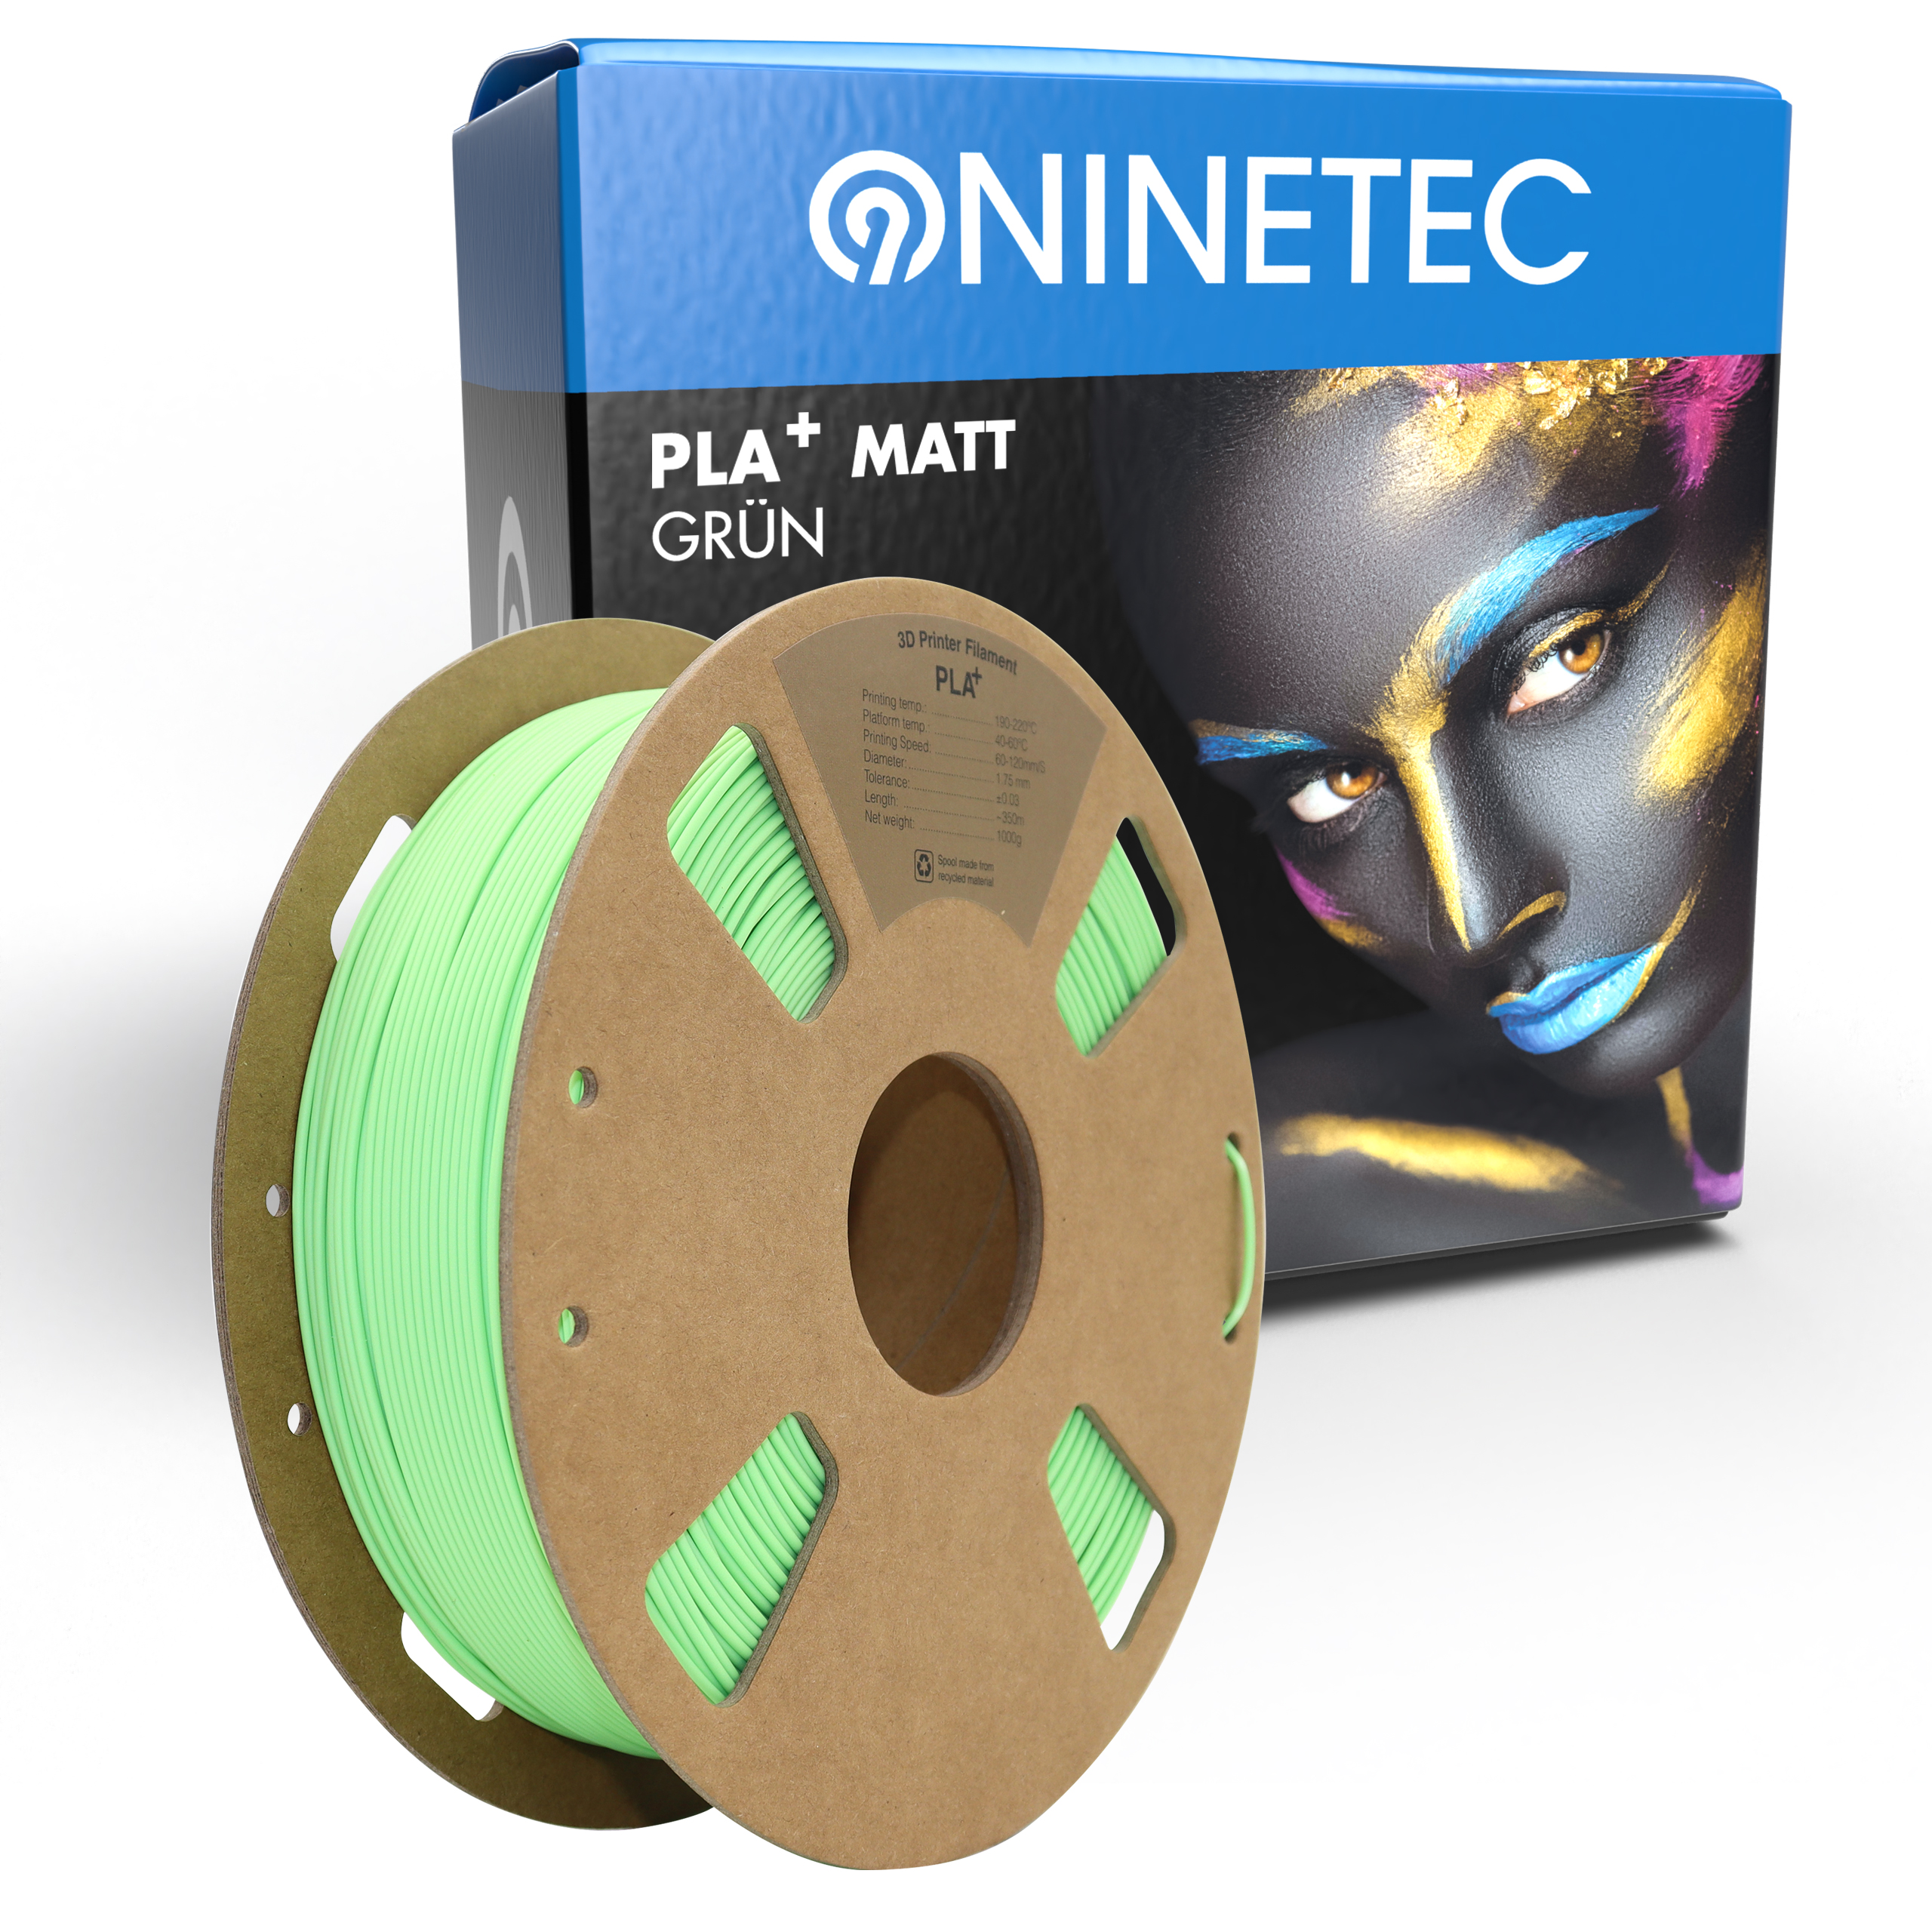 PLA+ NINETEC Grün Matt Filament